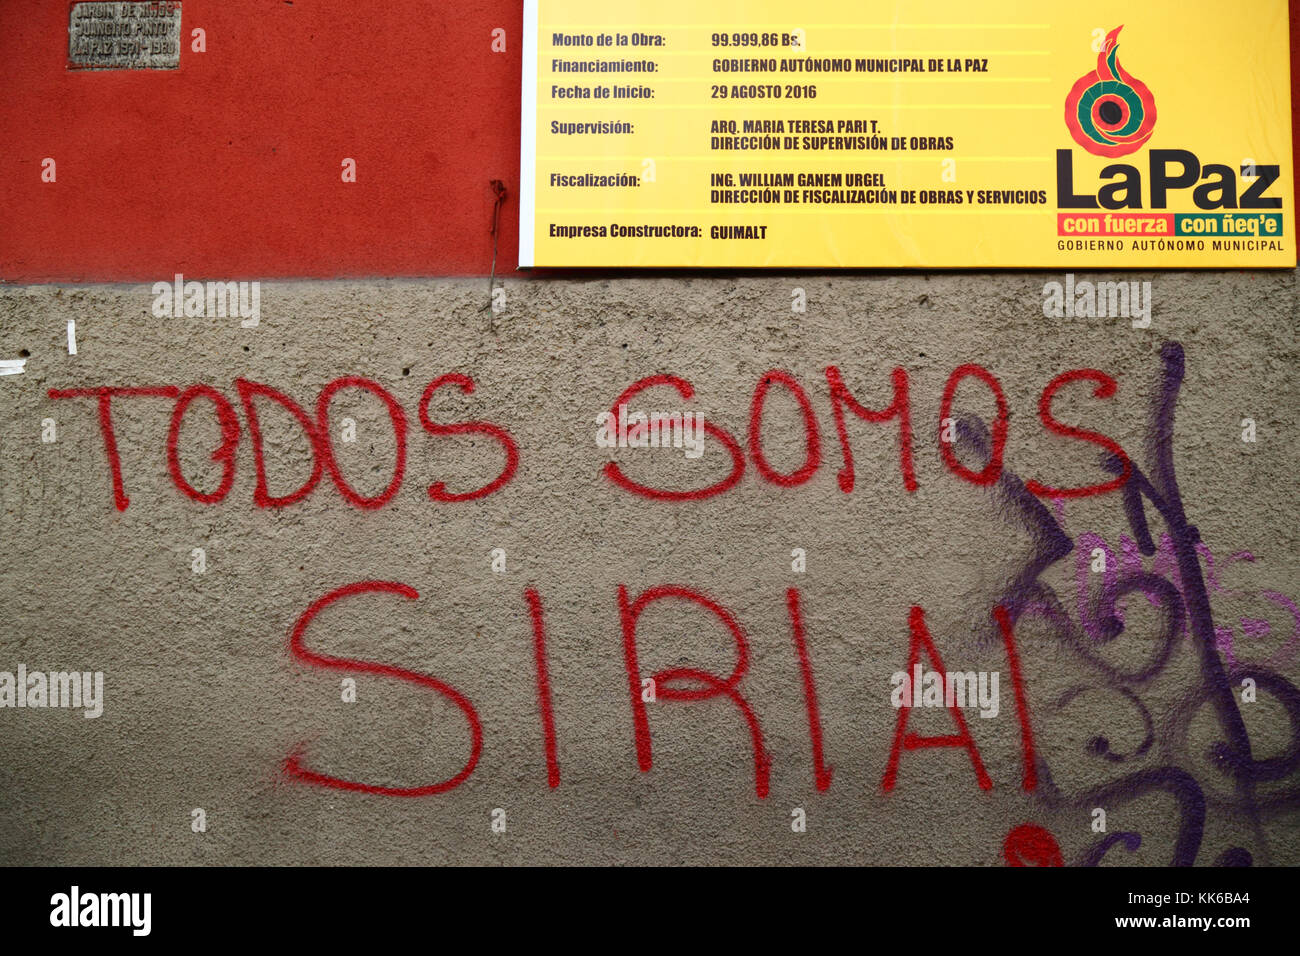 Todos Somos Syrie / Nous sommes tous des graffitis de la Syrie à l'appui de la Syrie sur le mur sur la construction, La Paz, Bolivie Banque D'Images